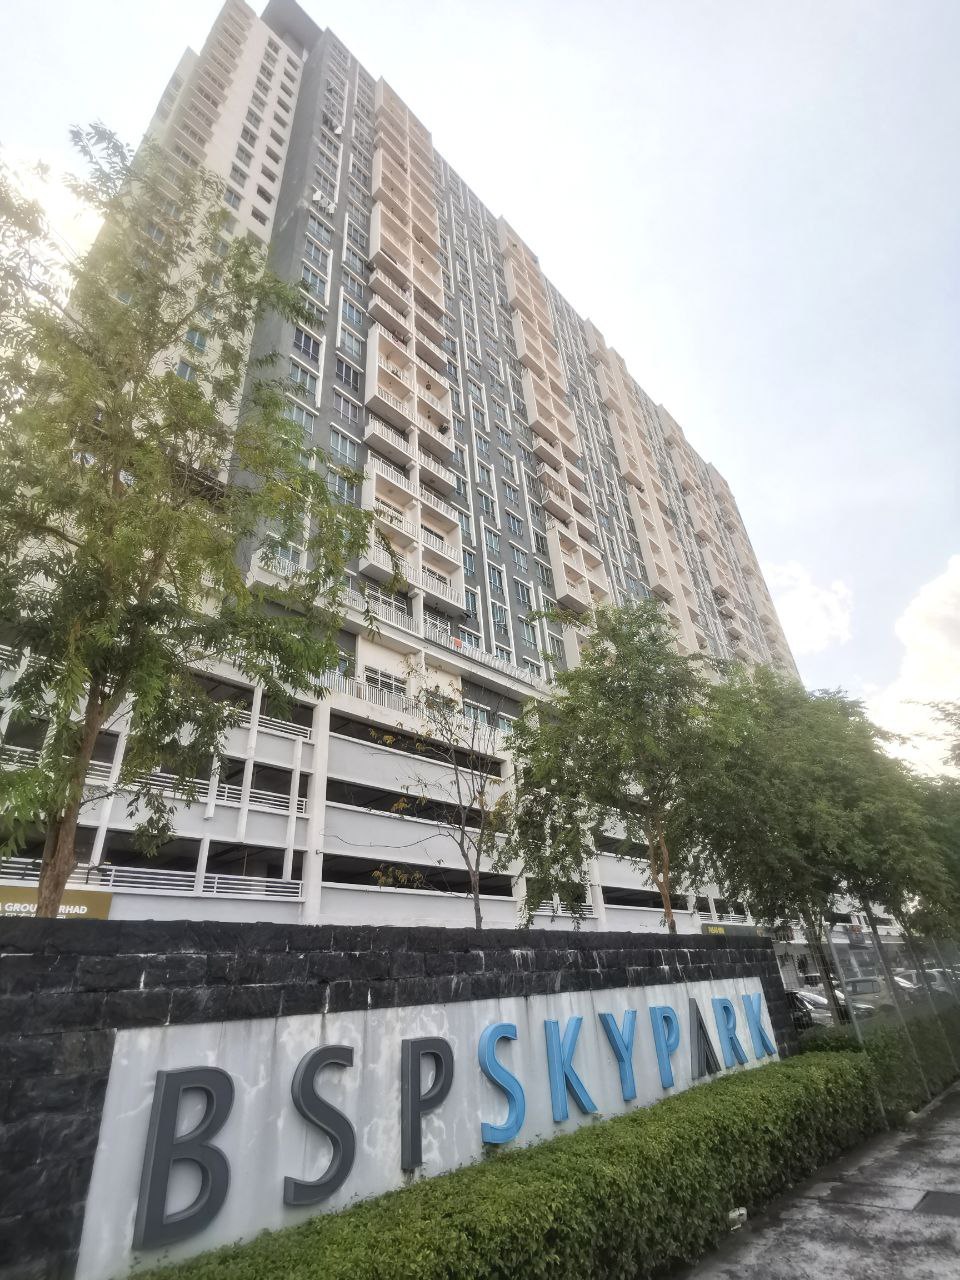 BSP Skypark Condominium @ Bandar Saujana Putra